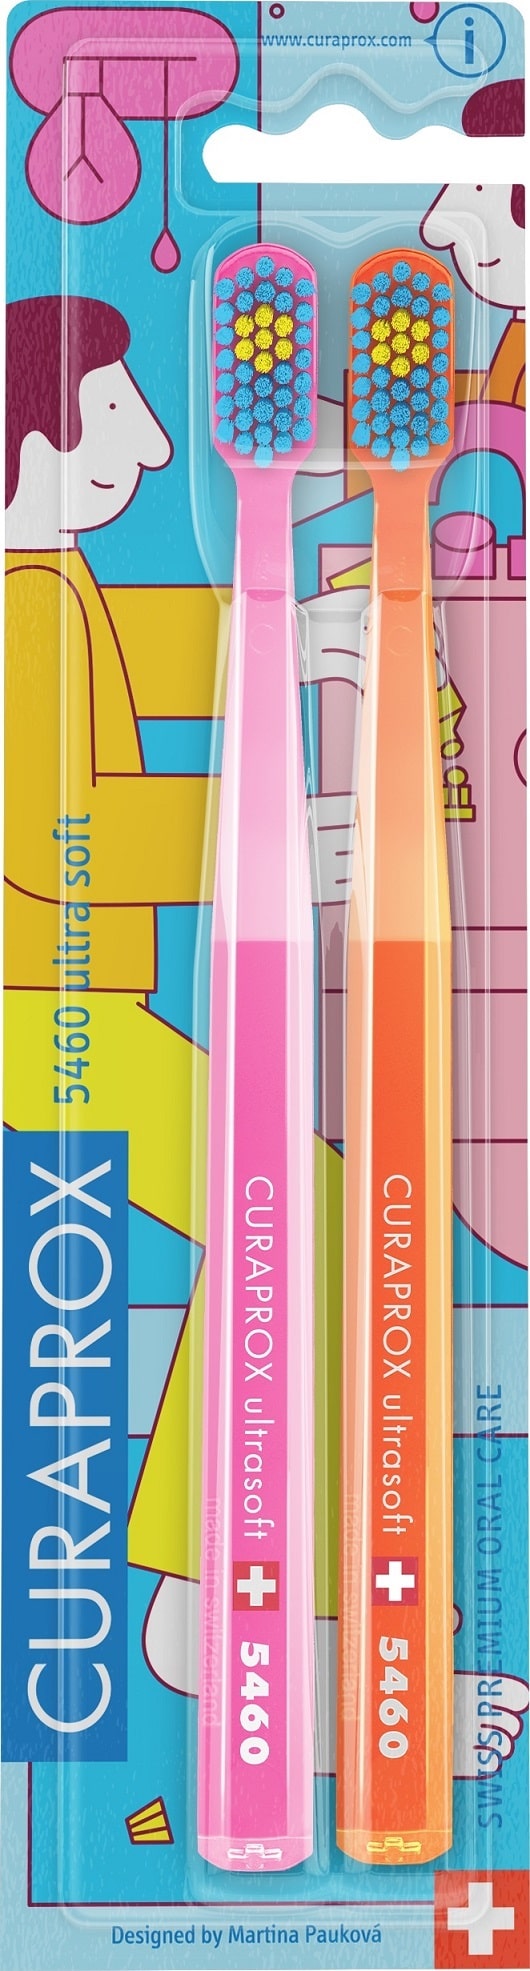 Curaprox Набор зубных щеток CS Duo Bathroom Ultra Soft, 2 шт (Curaprox, Мануальные зубные щетки)